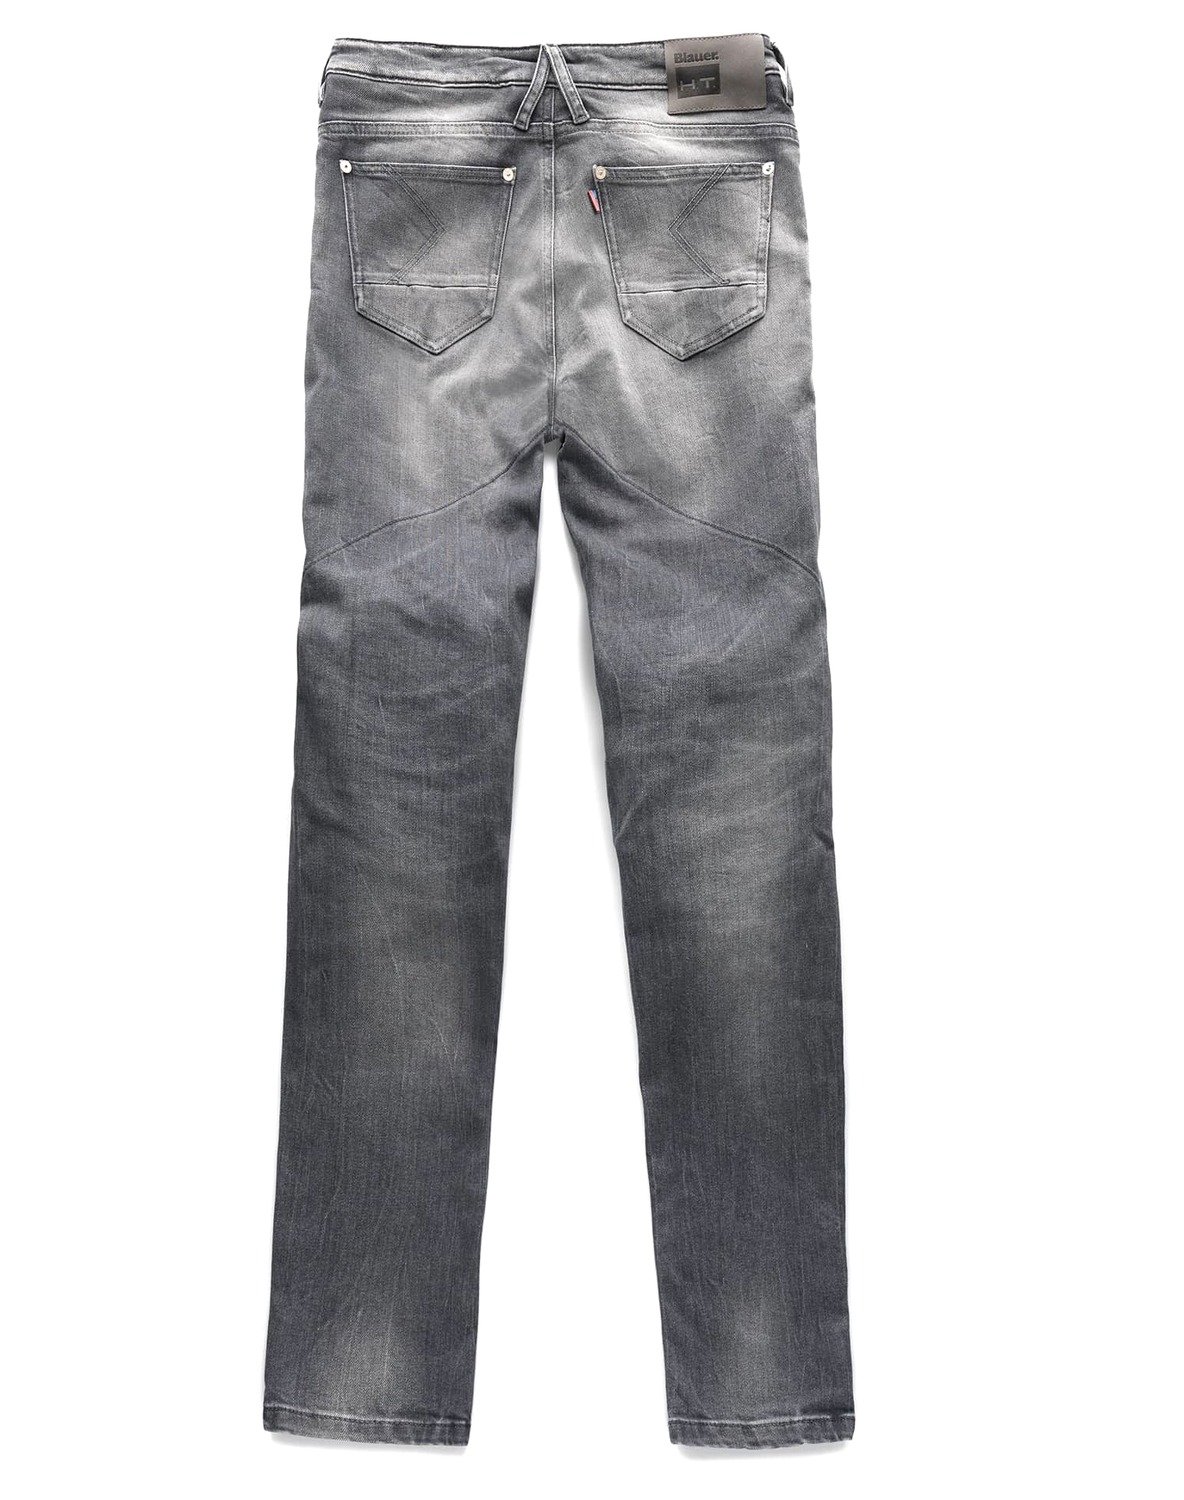 Obrázek produktu kalhoty, jeansy SCARLETT, BLAUER - USA, dámské (šedá) 12CBKD120052.004498.D109